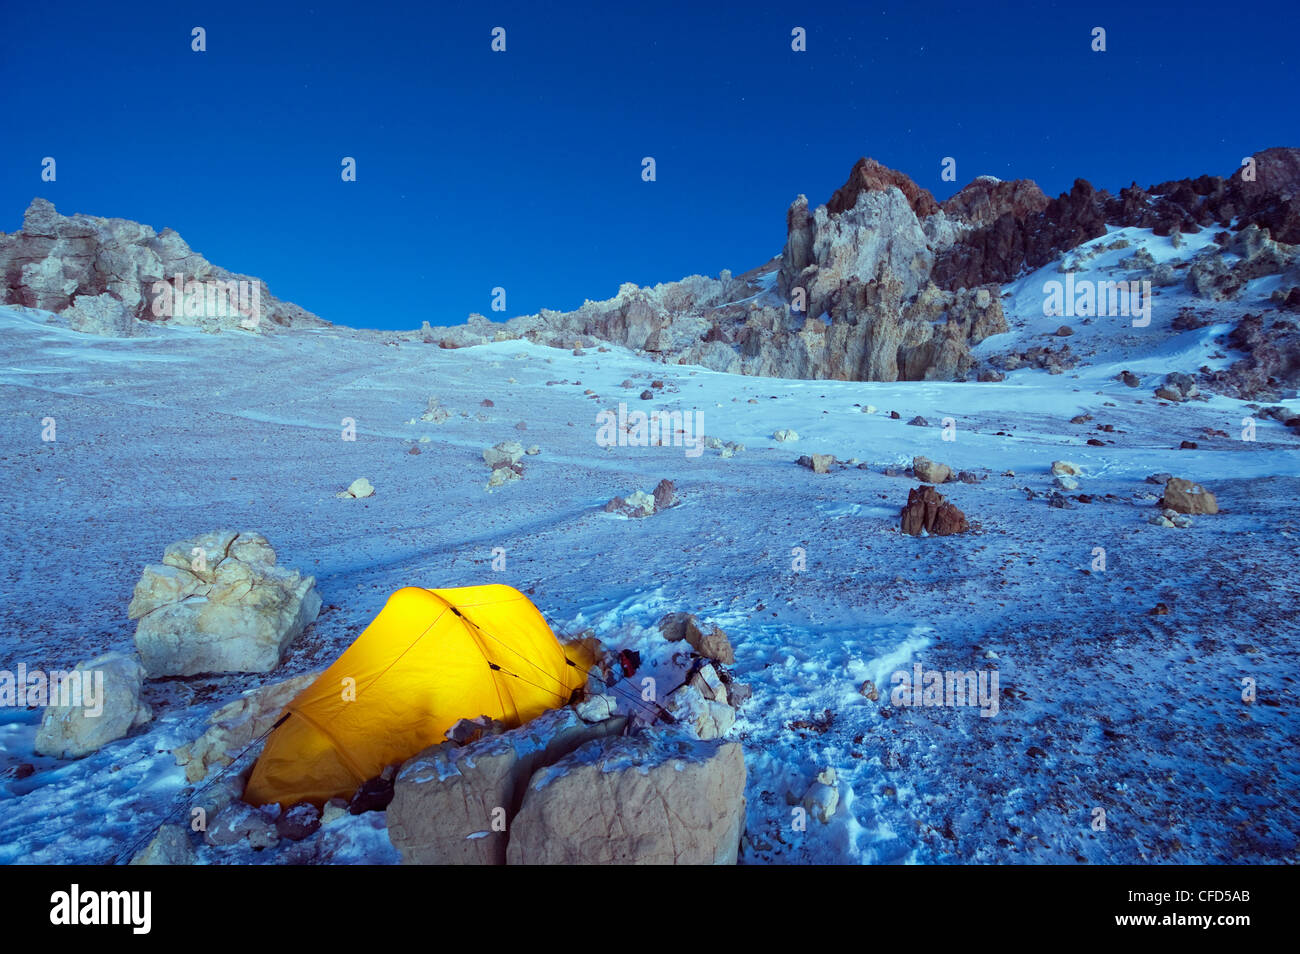 Tenda illuminata a rocce bianche campeggio, PIEDRAS BLANCAS, Parco Aconcagua, montagne delle Ande, Argentina Foto Stock